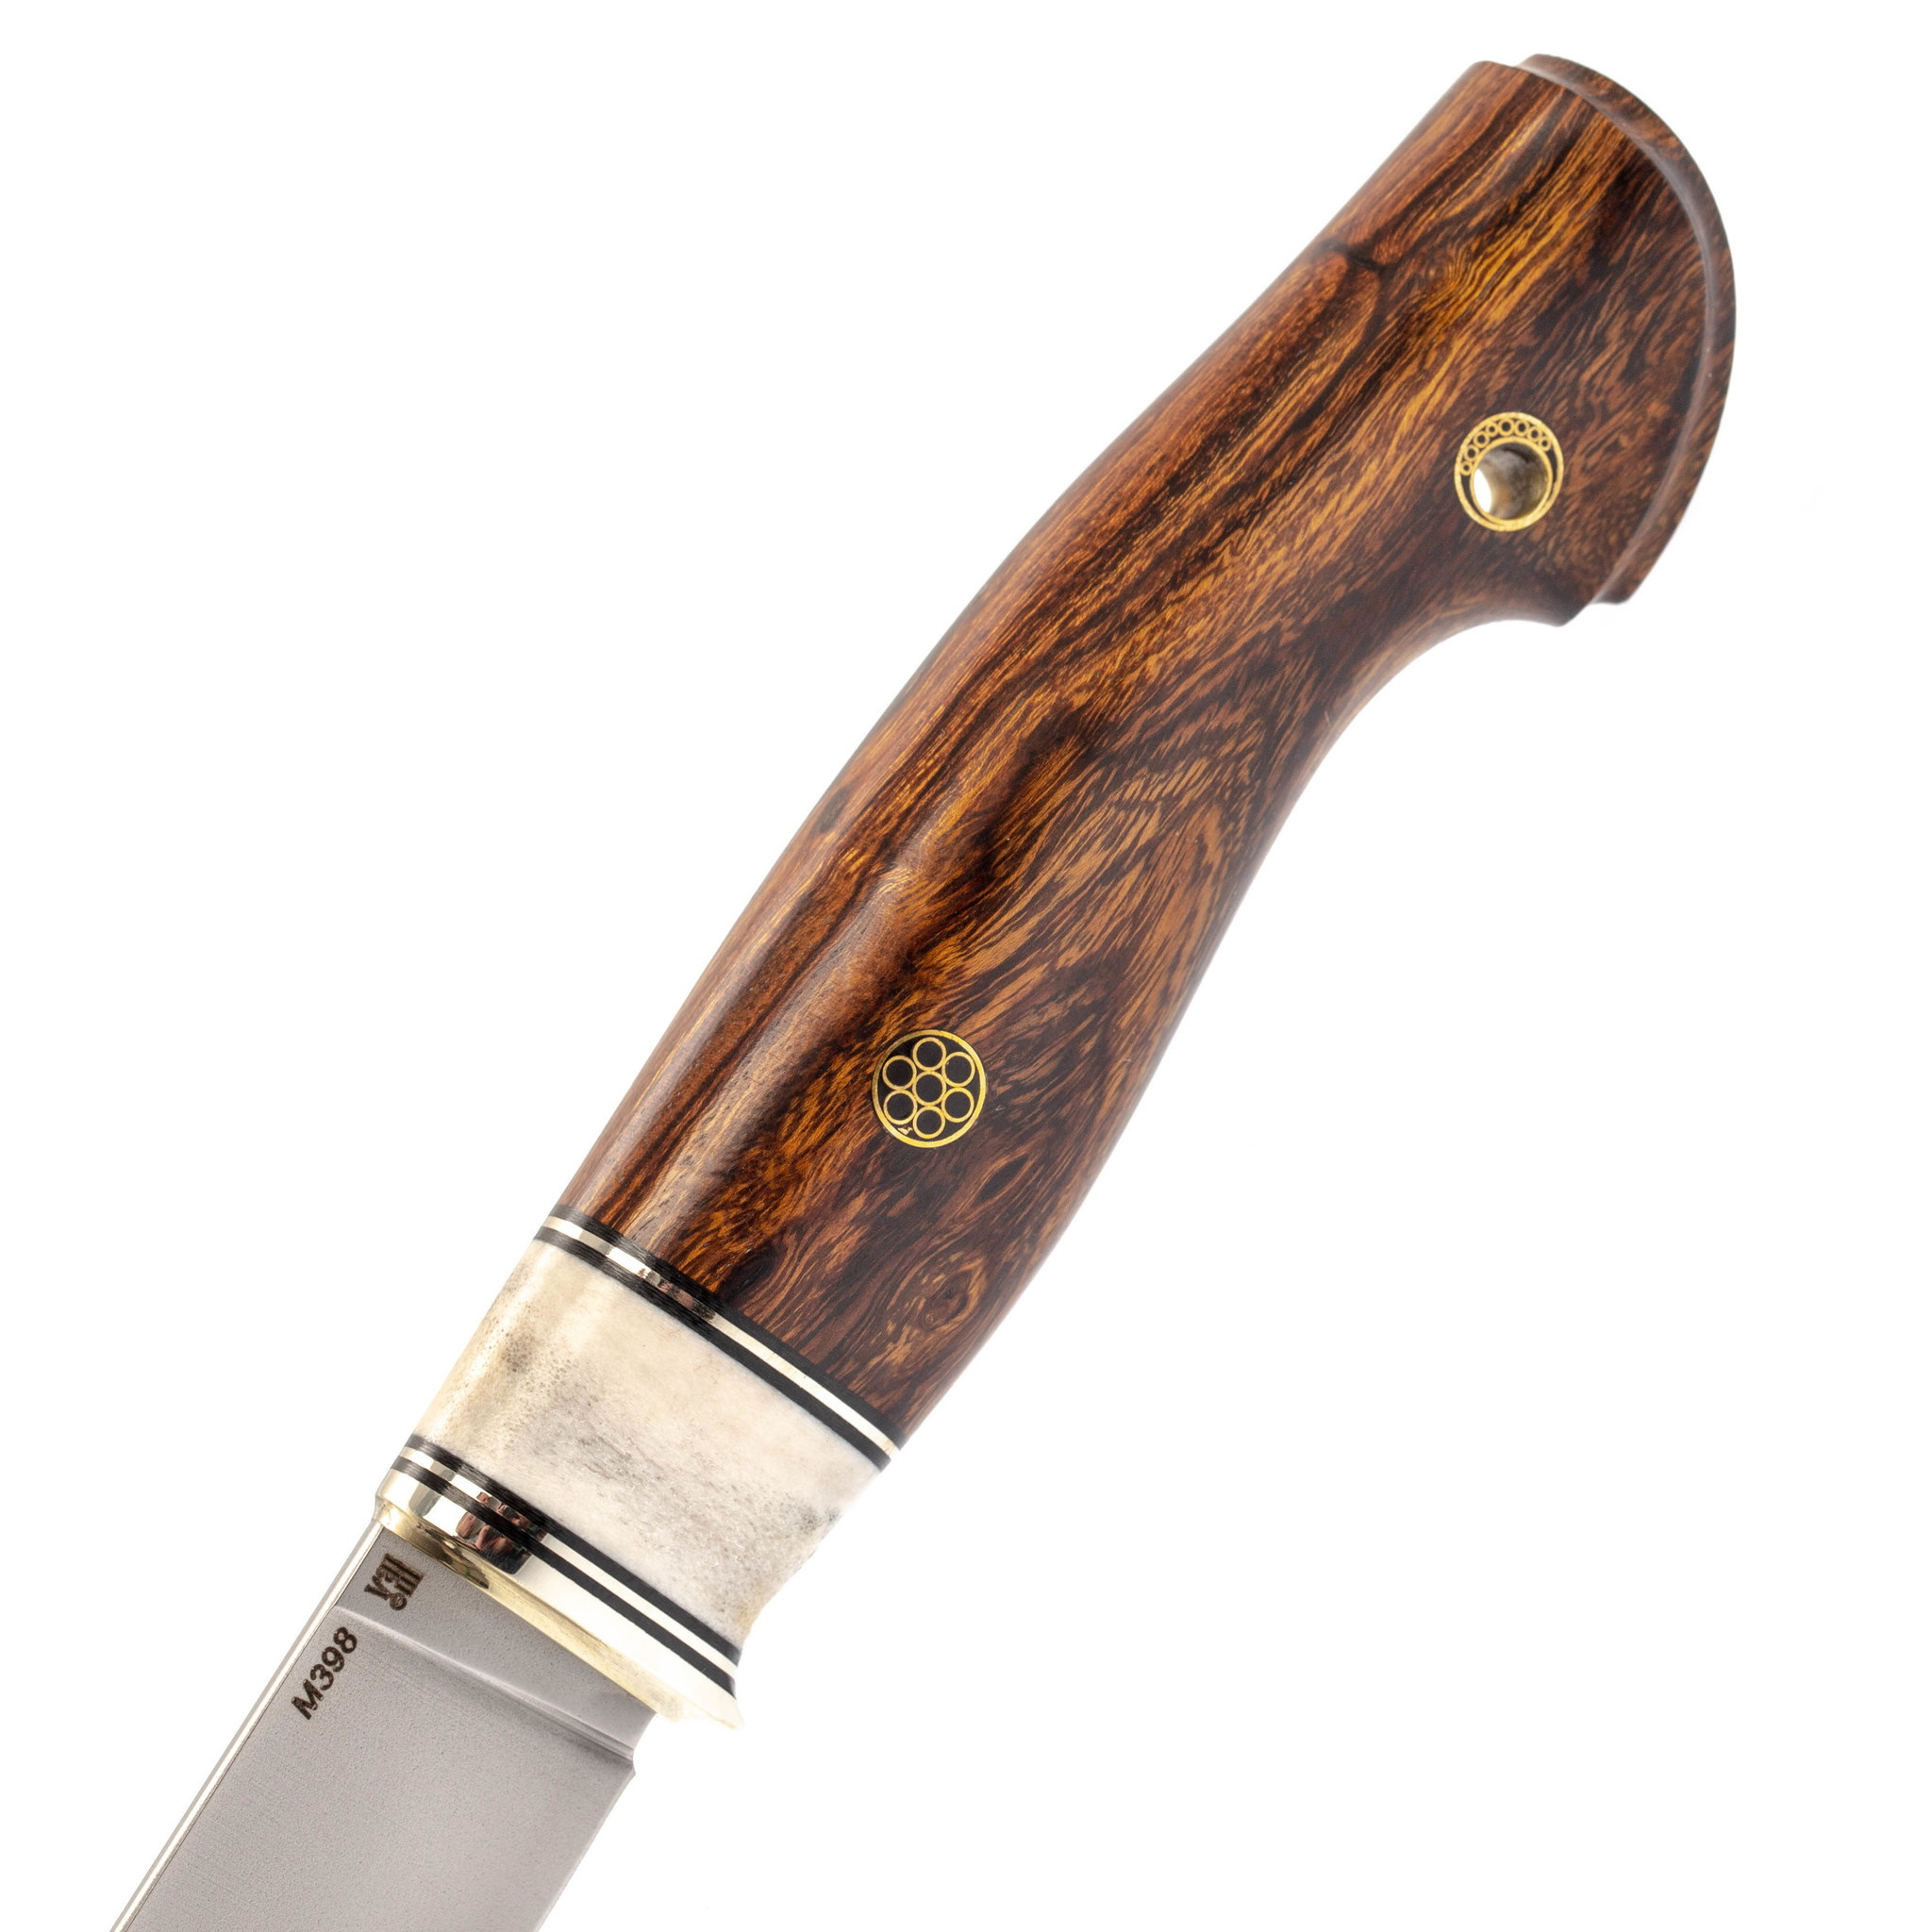 Нож Лидер 3, сталь M398, железное дерево, вставка рог лося - фото 3